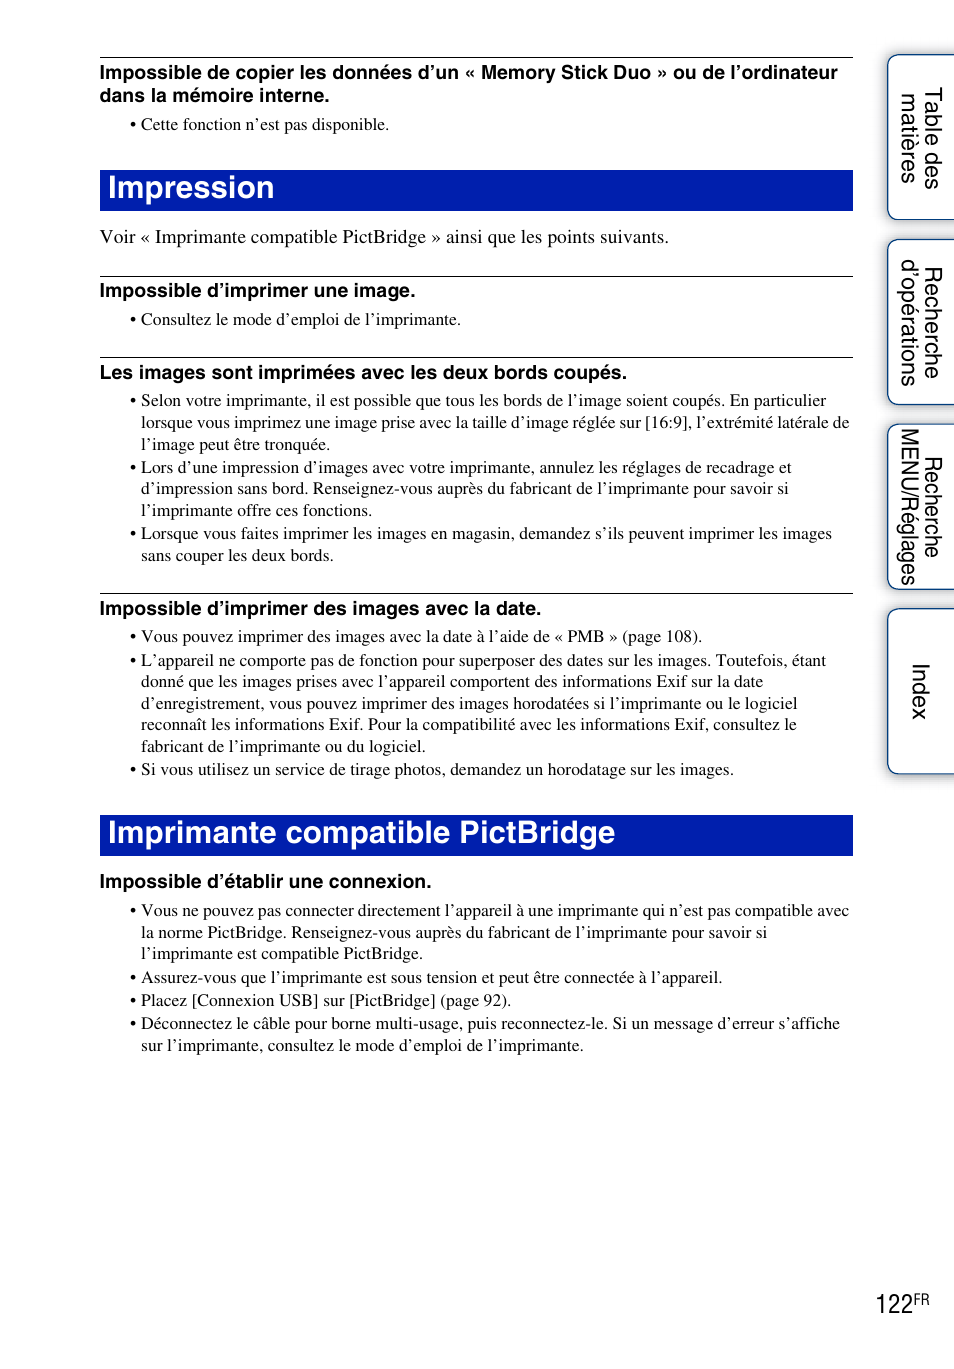 Impression imprimante compatible pictbridge | Sony DSC-WX1 Manuel d'utilisation | Page 122 / 139